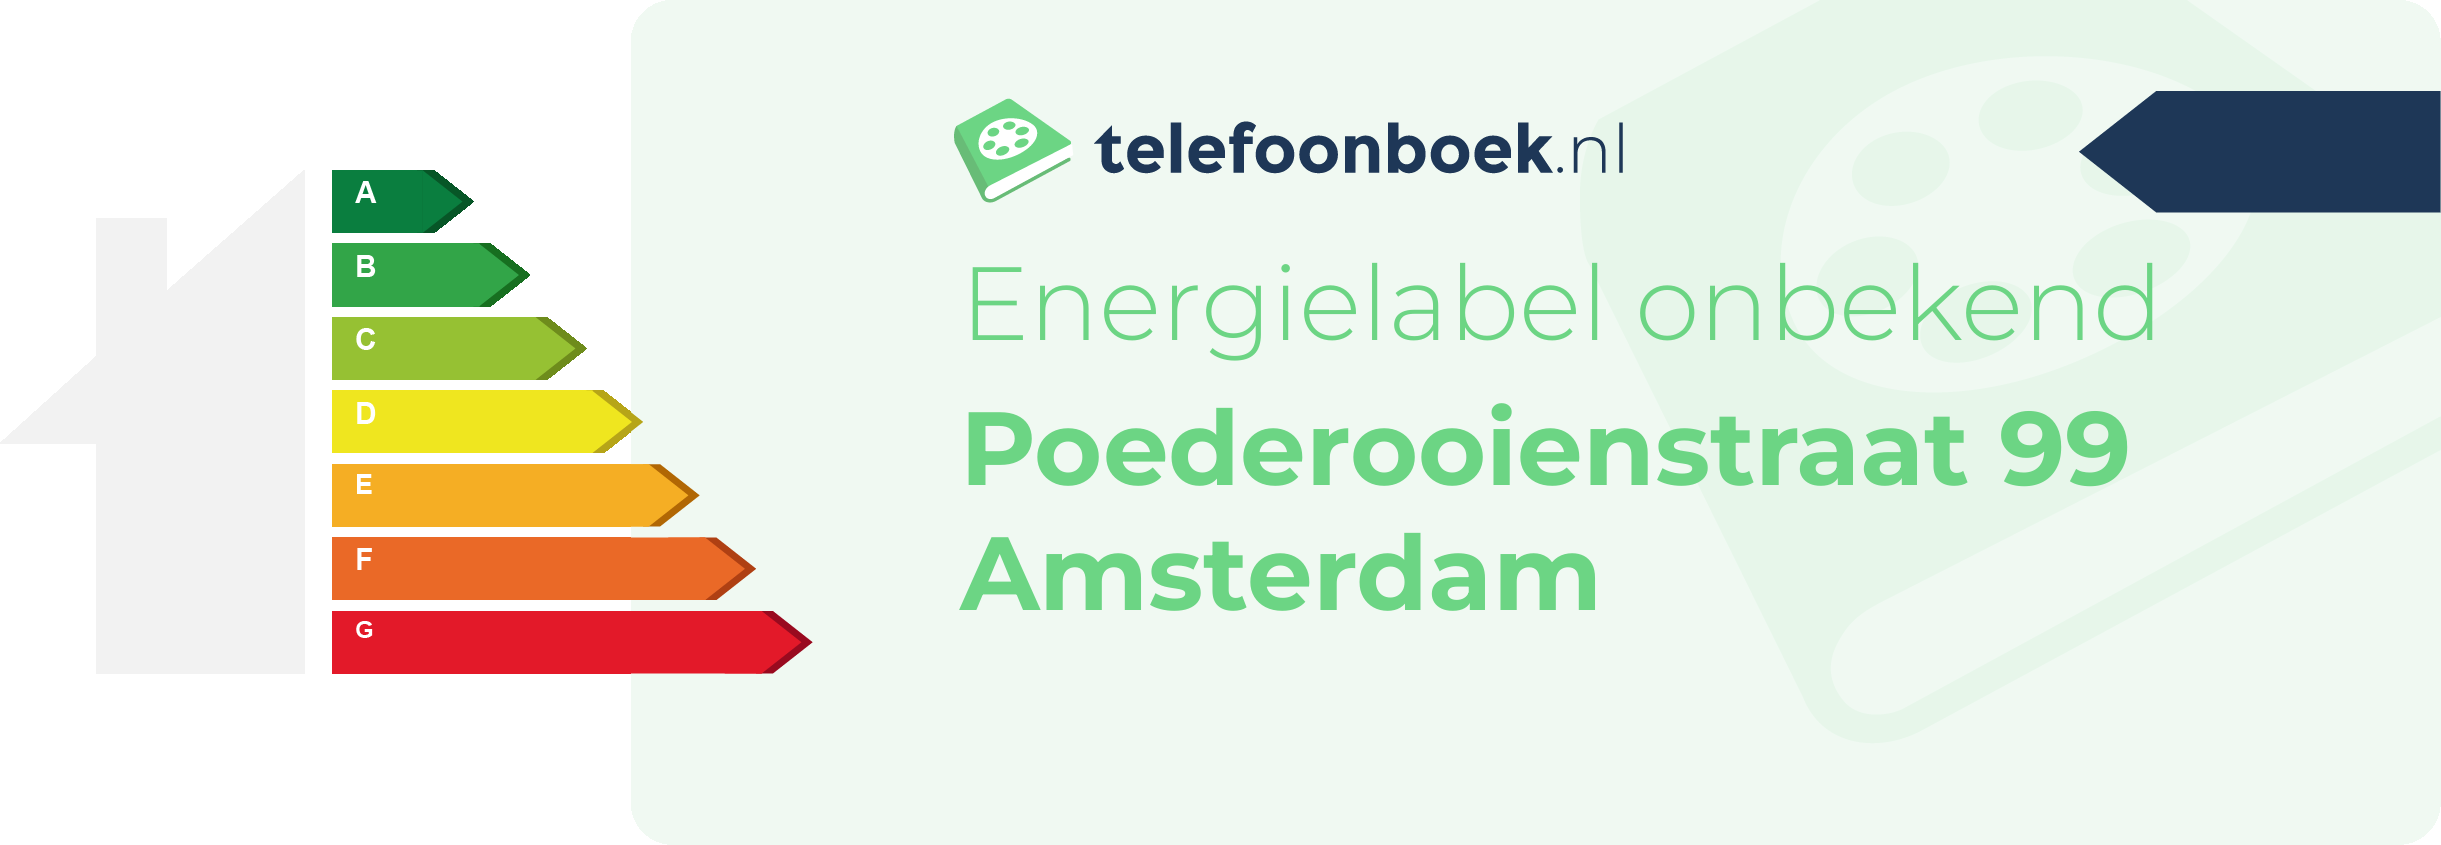 Energielabel Poederooienstraat 99 Amsterdam